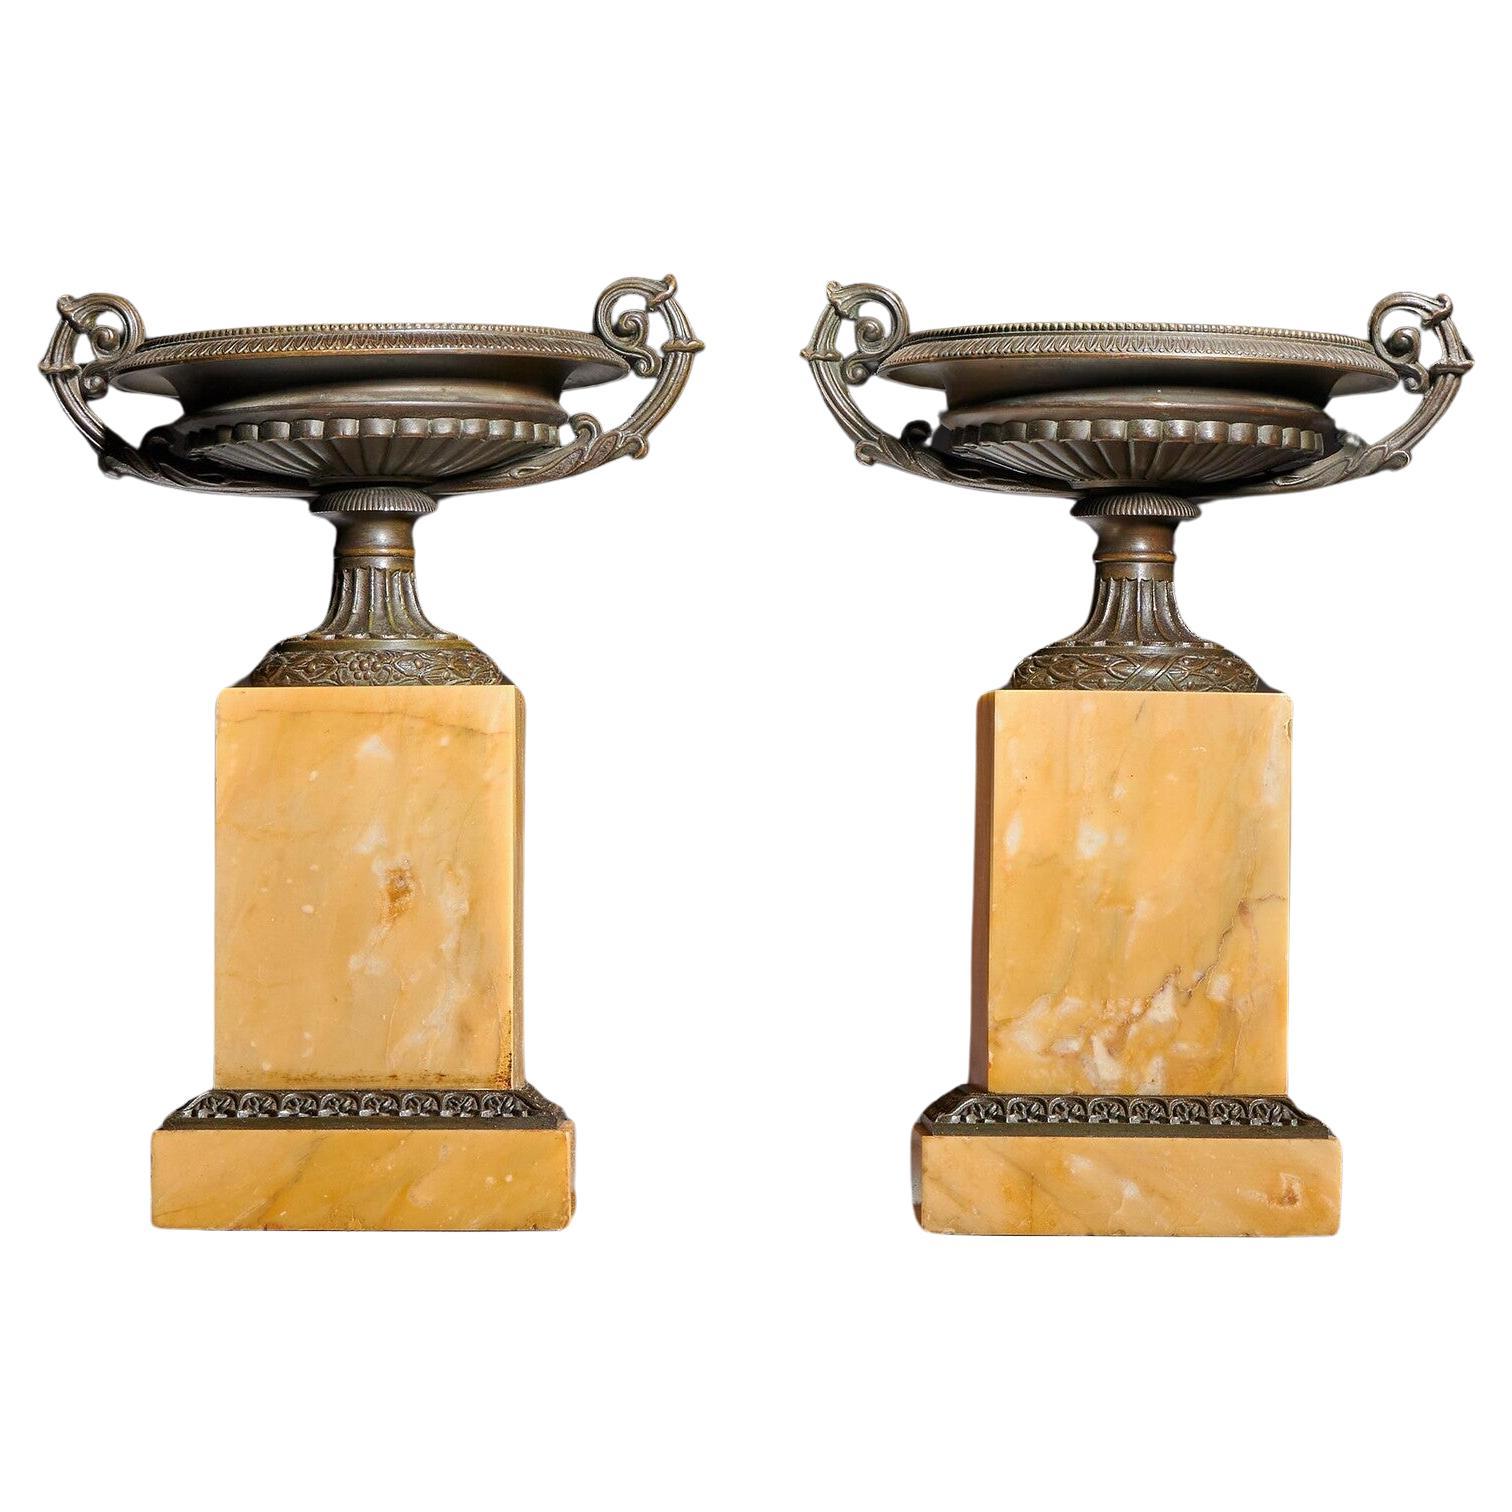 Ein feines Paar französischer Grand Tour-Tazzas aus Bronze und Siena-Marmor aus dem frühen 19. Jahrhundert